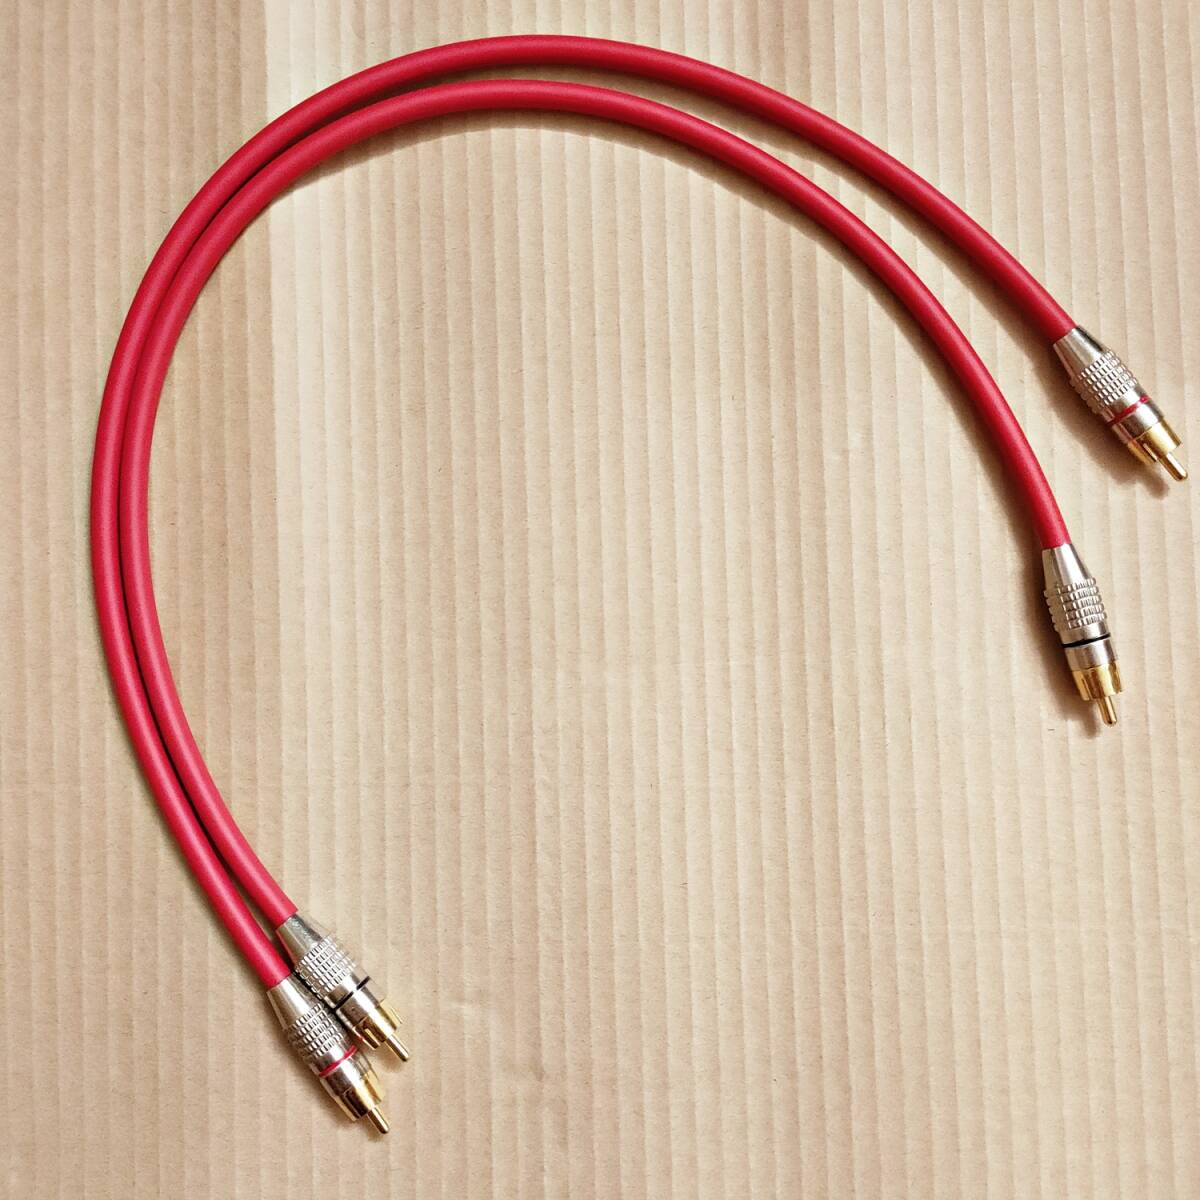 MOGAMI ( Moga mi) / 2534 использование RCA кабель красный 4 сердцевина VERSION 45cm 2 шт [ контрольный номер :4]